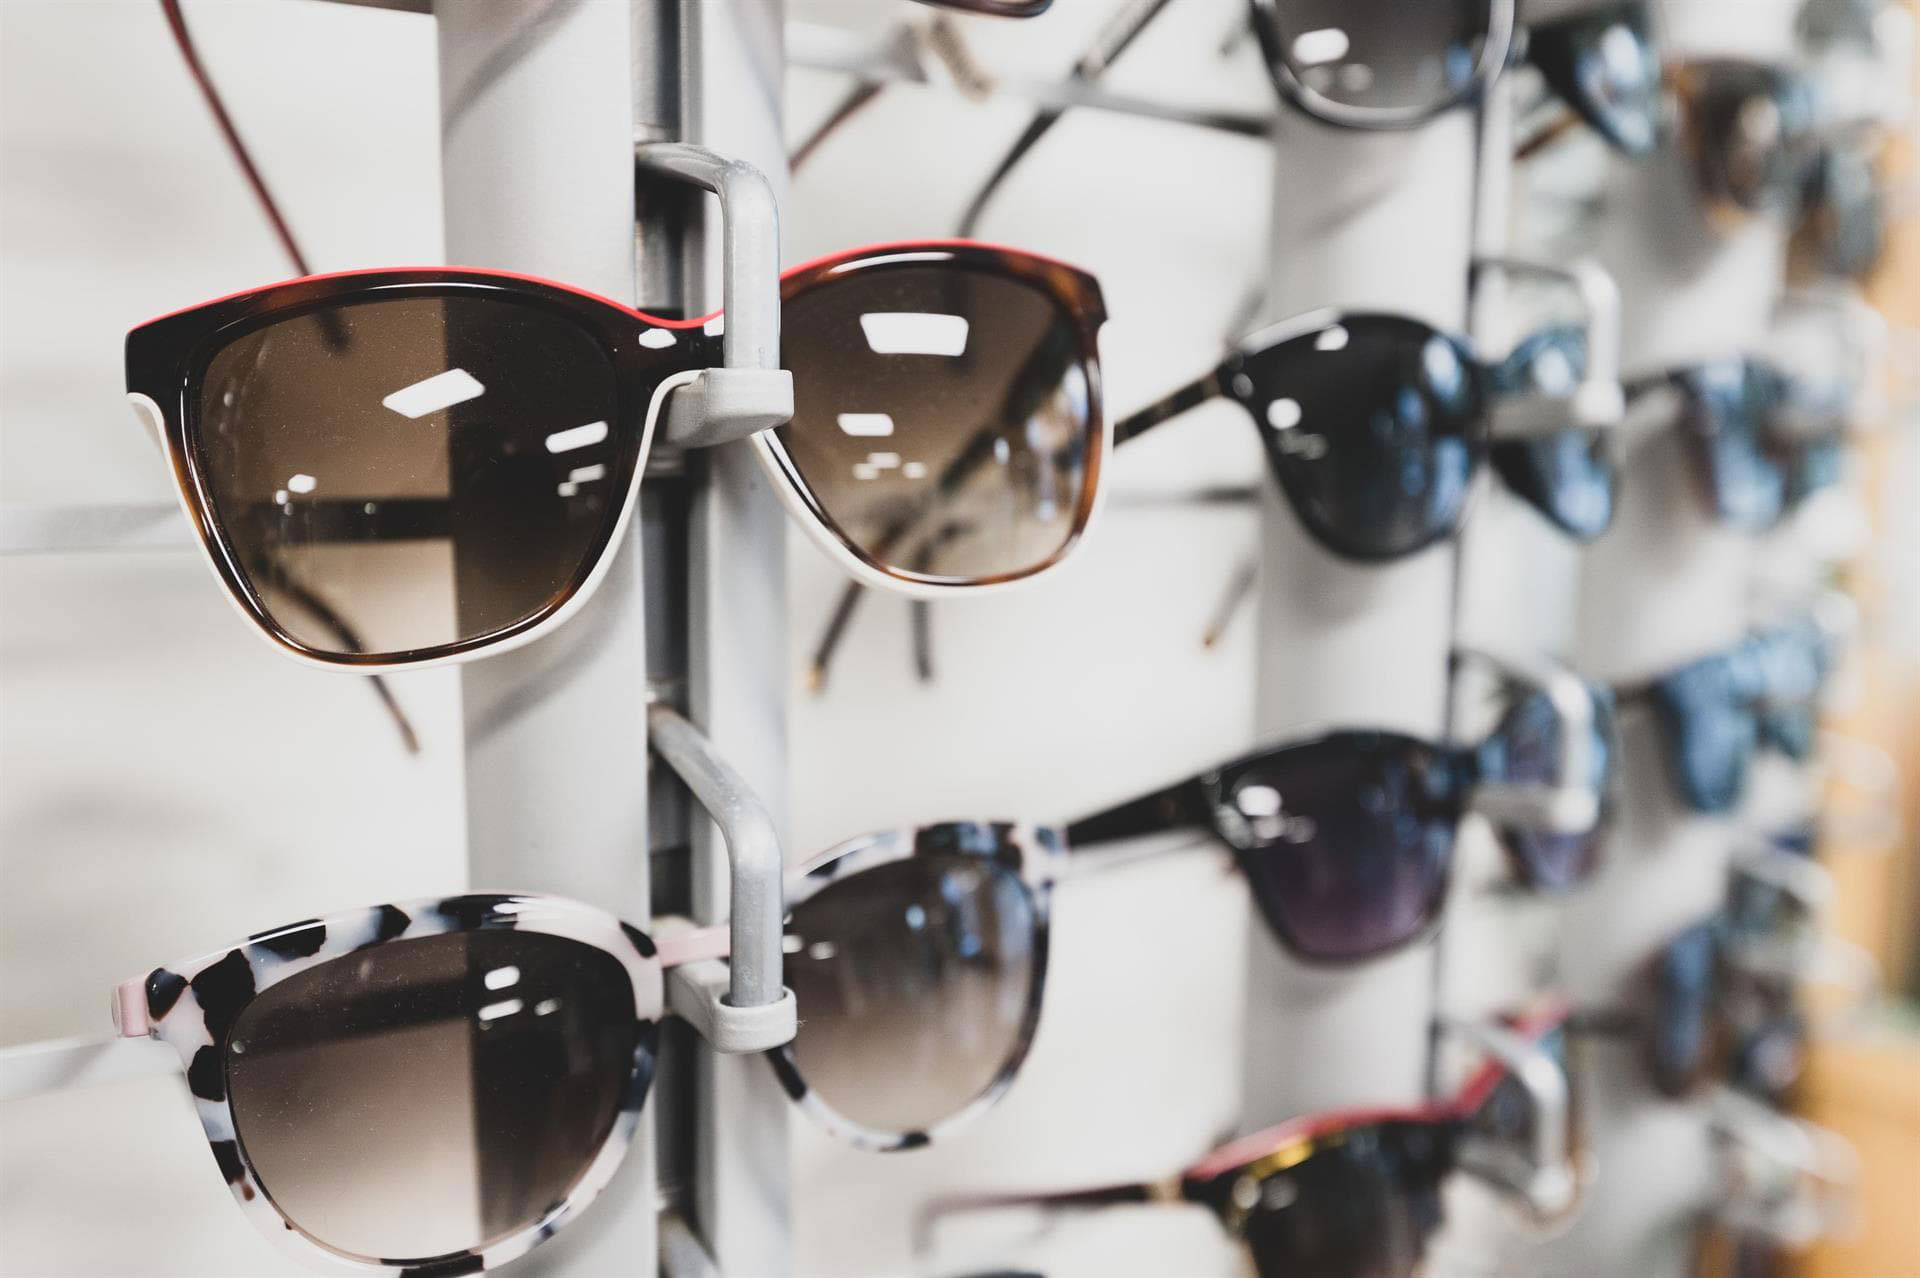  ¡Consigue tus nuevas gafas de sol de calidad y al mejor precio!